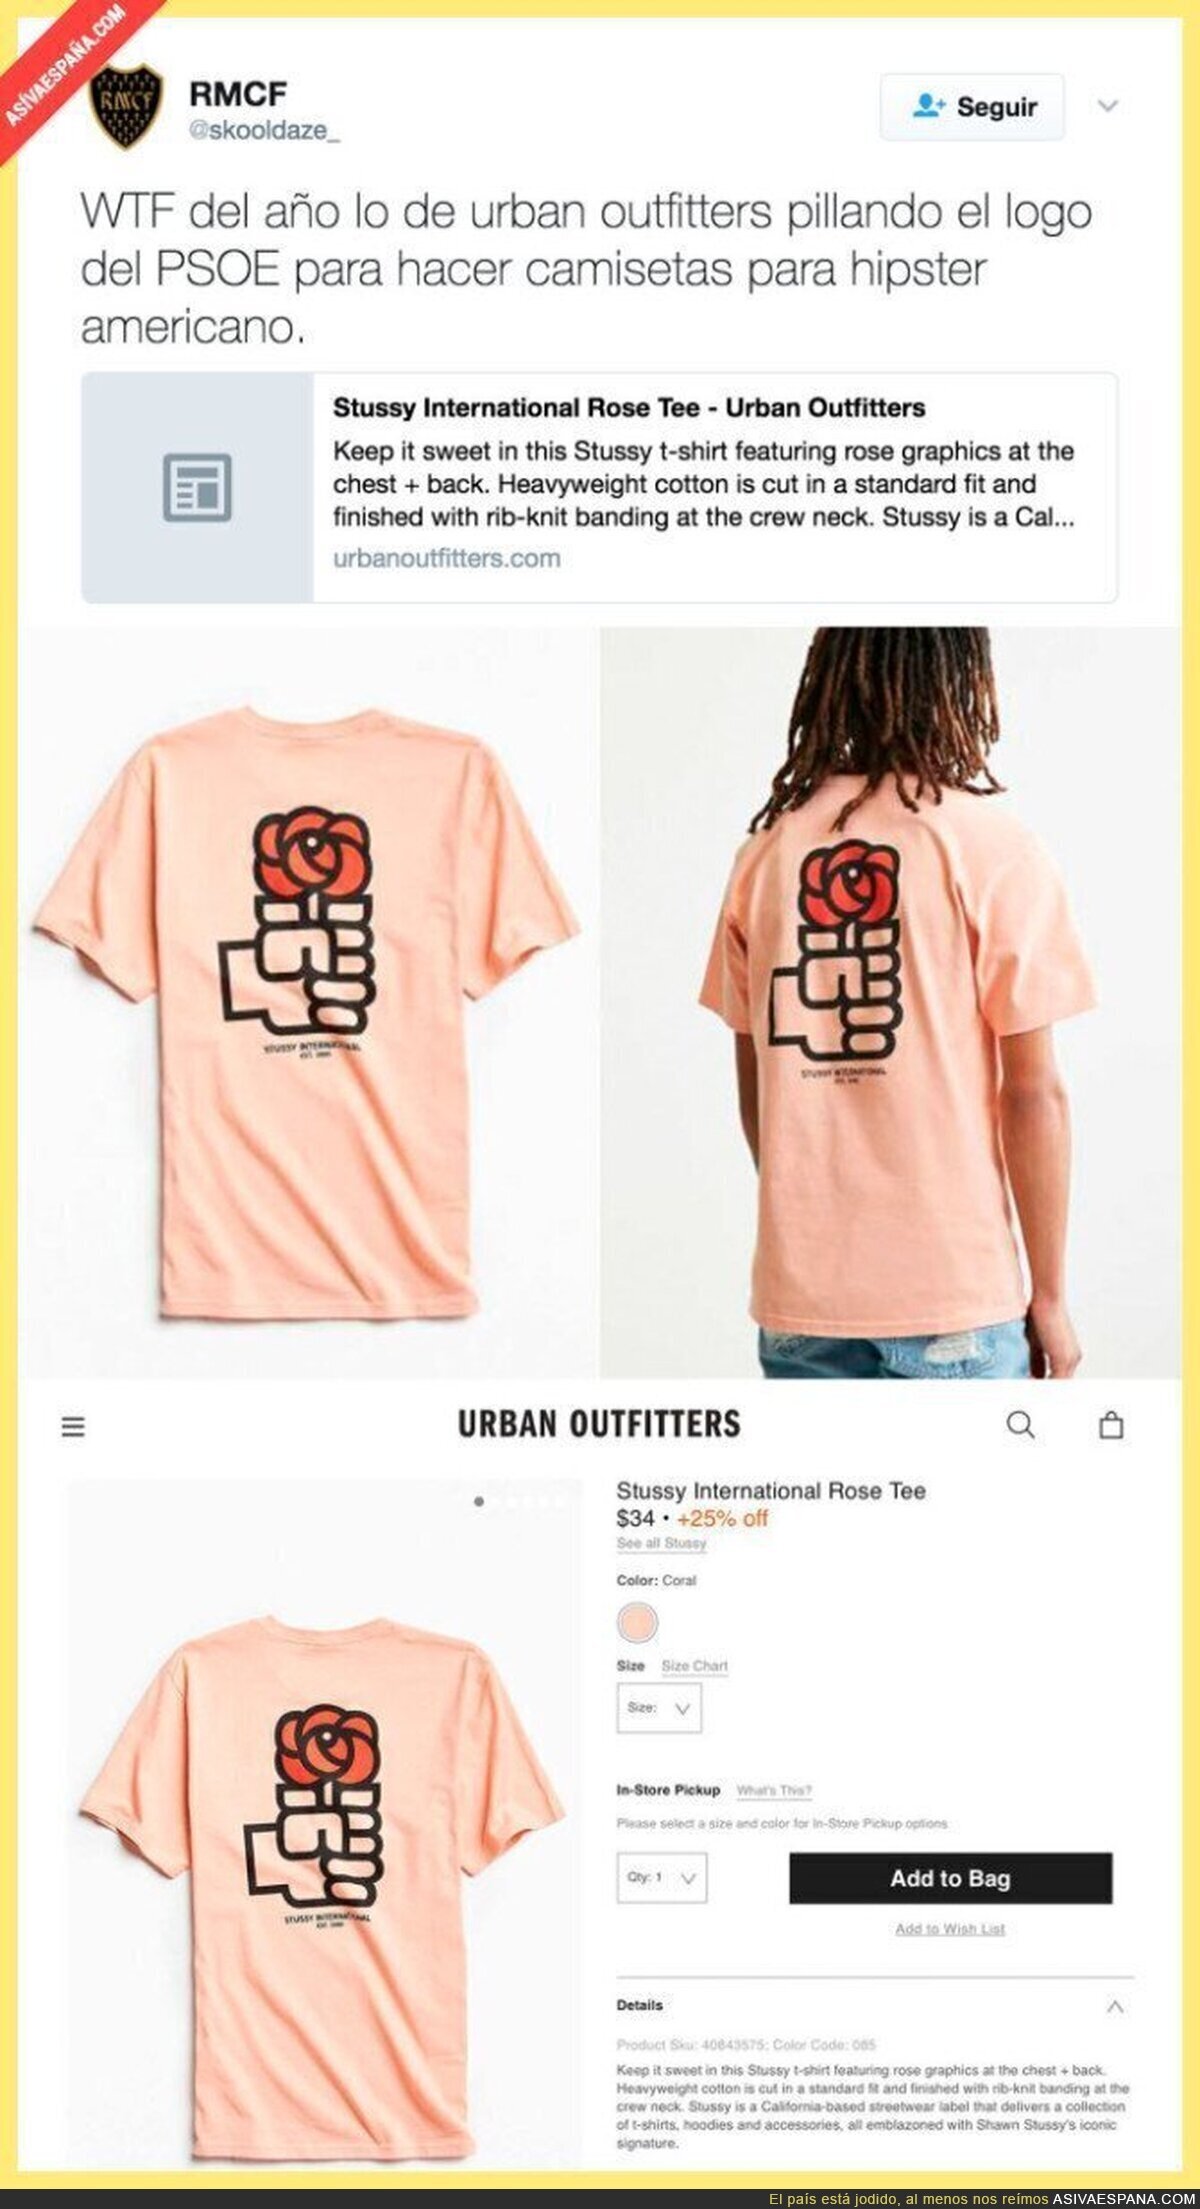 La tienda estadounidense Urban Outfitters vende una camiseta con el logo del PSOE de 1977